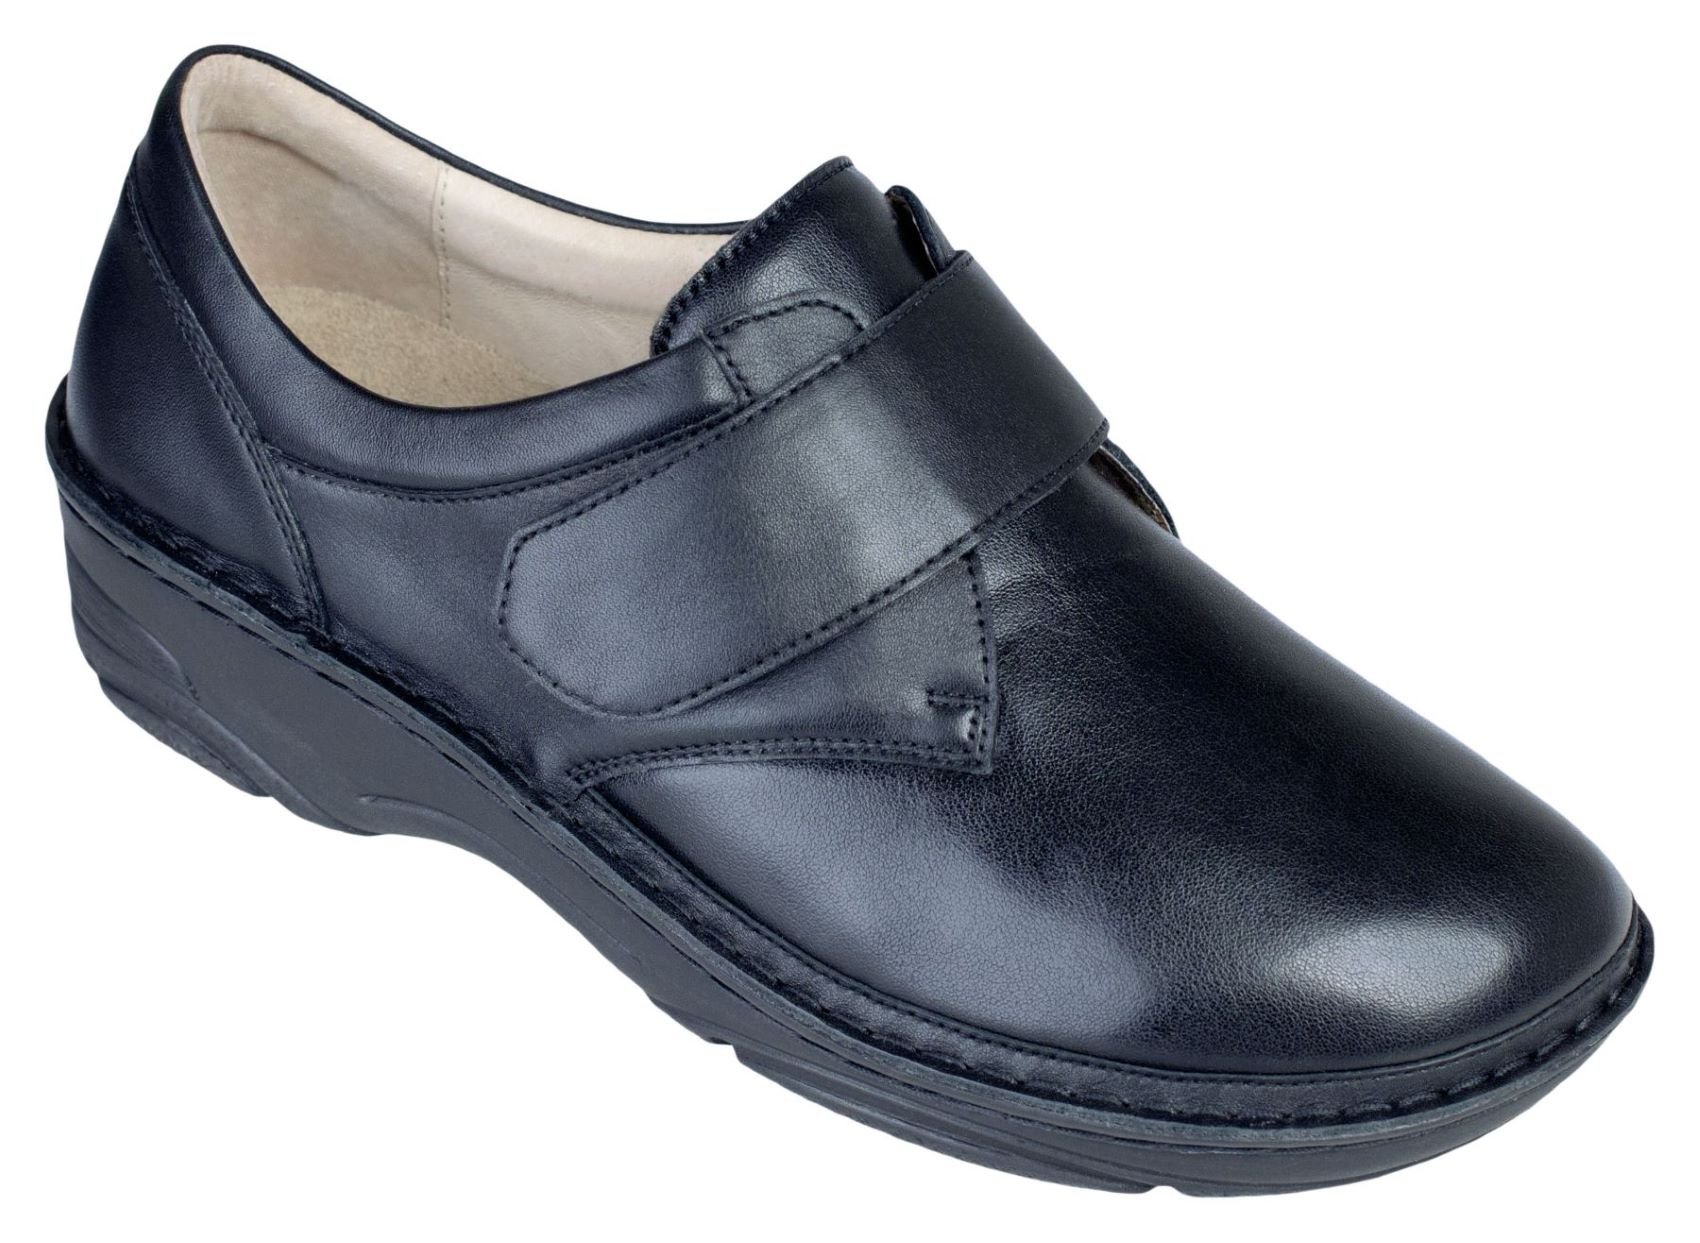 Купить обувь 37 размера. ОРТЕКА обувь мужская ортопедическая. Ортопедическая обувь Тони Браун 1856. Беркеманн обувь ортопедическая женская. БЕРКЕМАН женская обувь Claudia.